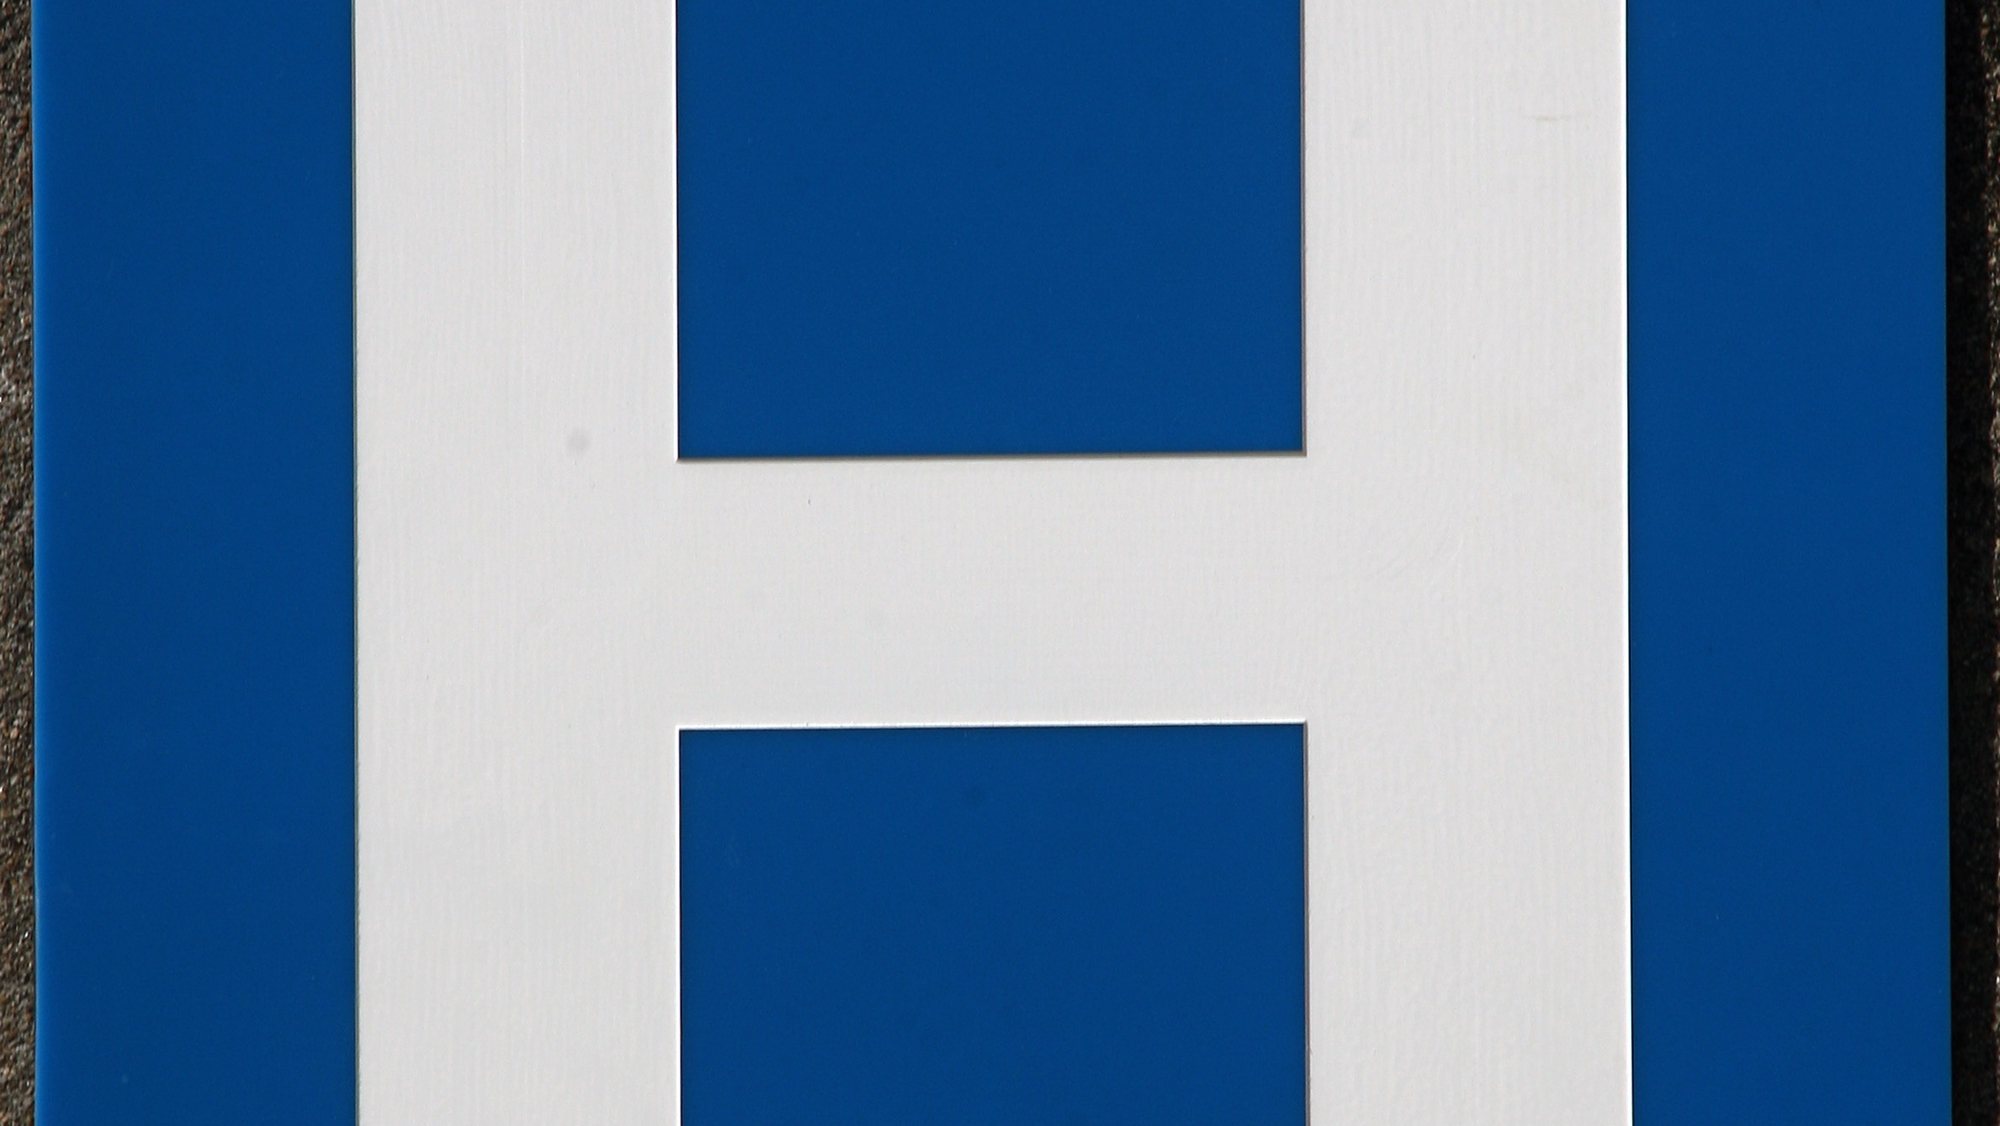 Simbolo de indicação de um hospital.

ANTONIO COTRIM/LUSA